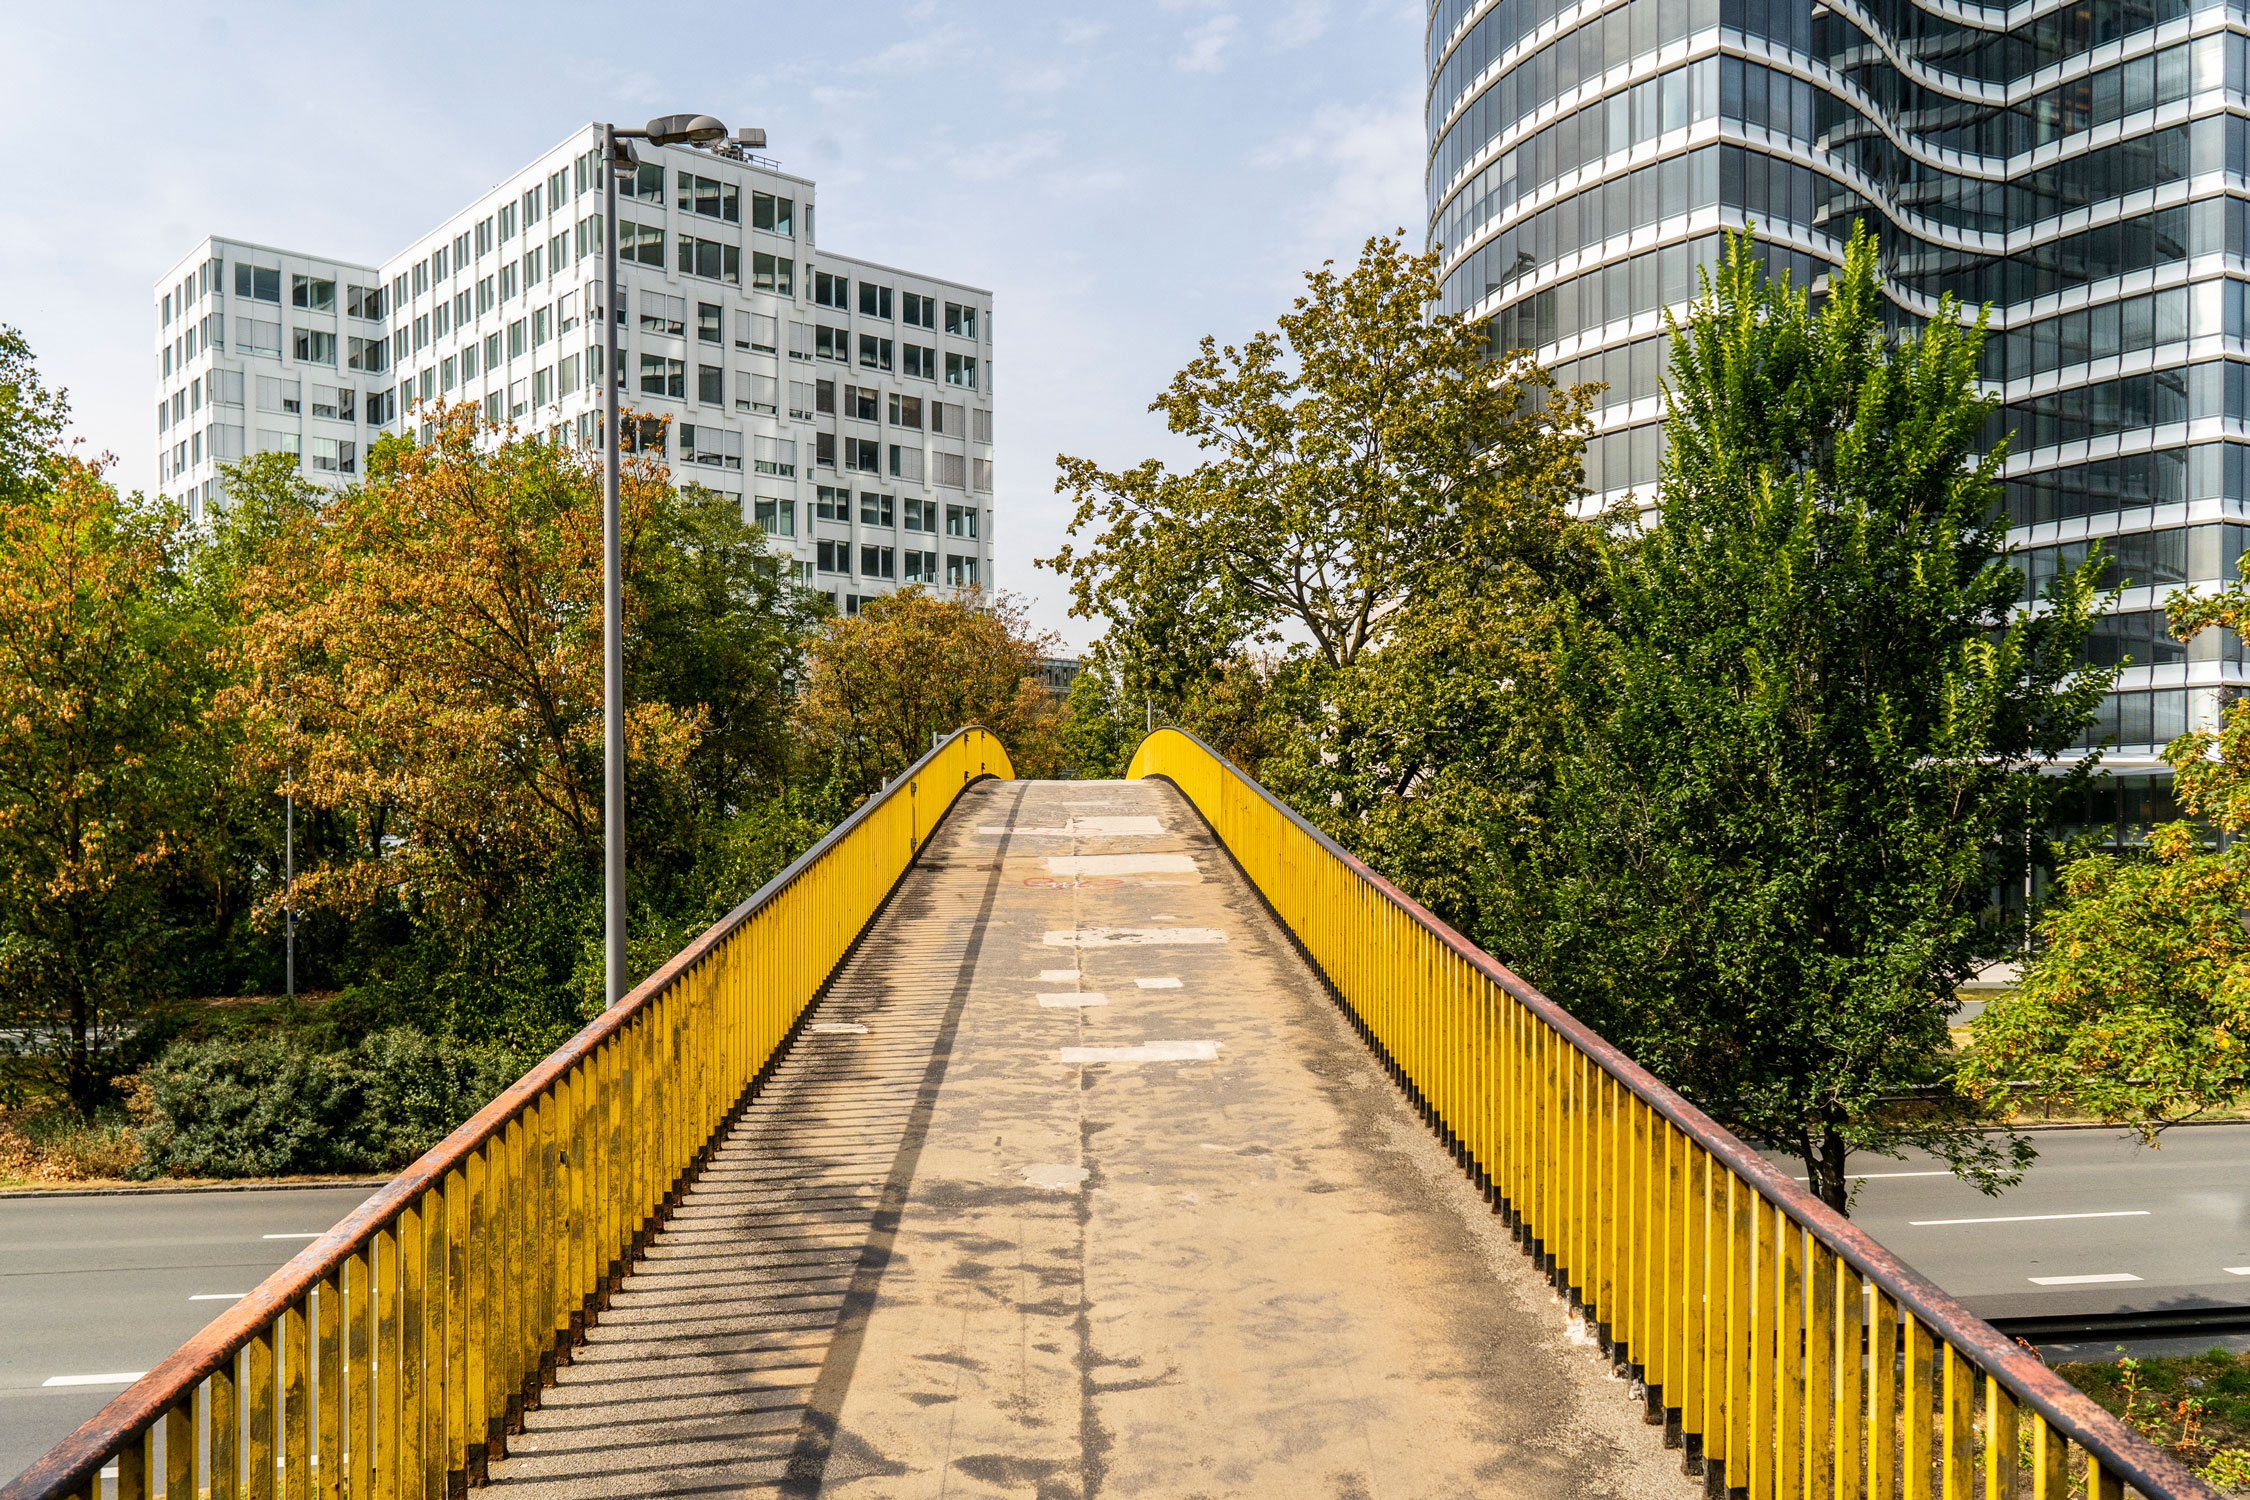 Ansicht einer Brücke, die über eine mehrspurige Straße führt. Das Geländer ist gelb gestrichen, neben der Brücke sind Bäume gepflanzt. DIe Brücke läuft auf mehrere Hochhäuser zu.